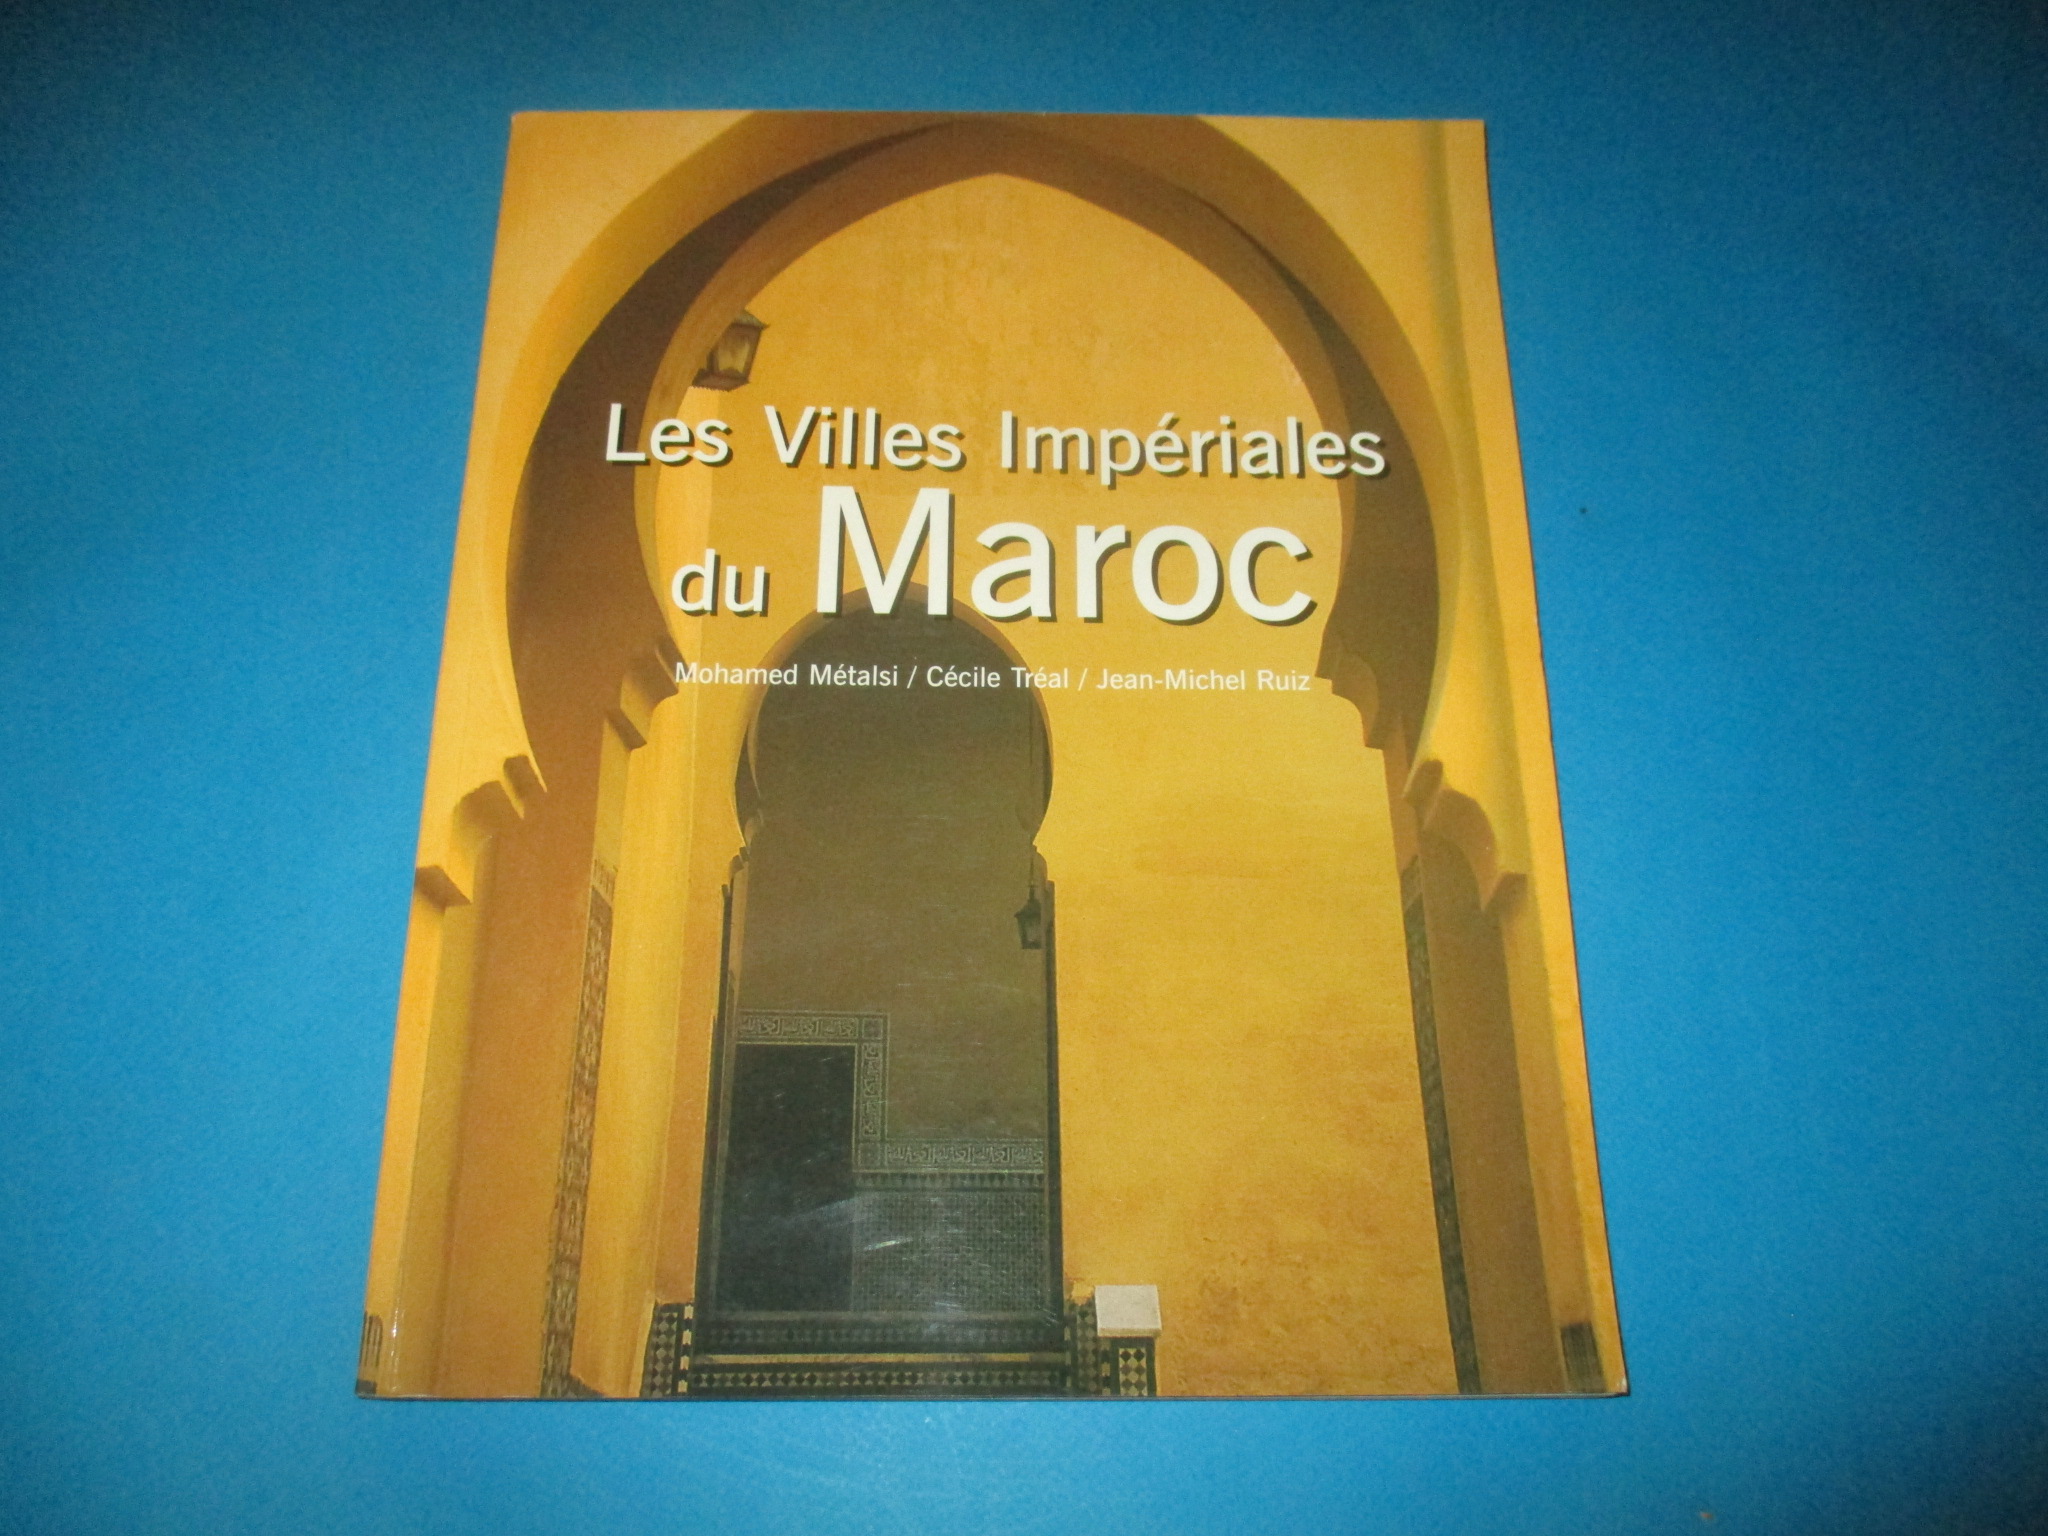 Les Villes Impériales du Maroc, Mohamed Métalsi Cécile Tréal & Jean-Michel Ruiz, Saint-André des Arts